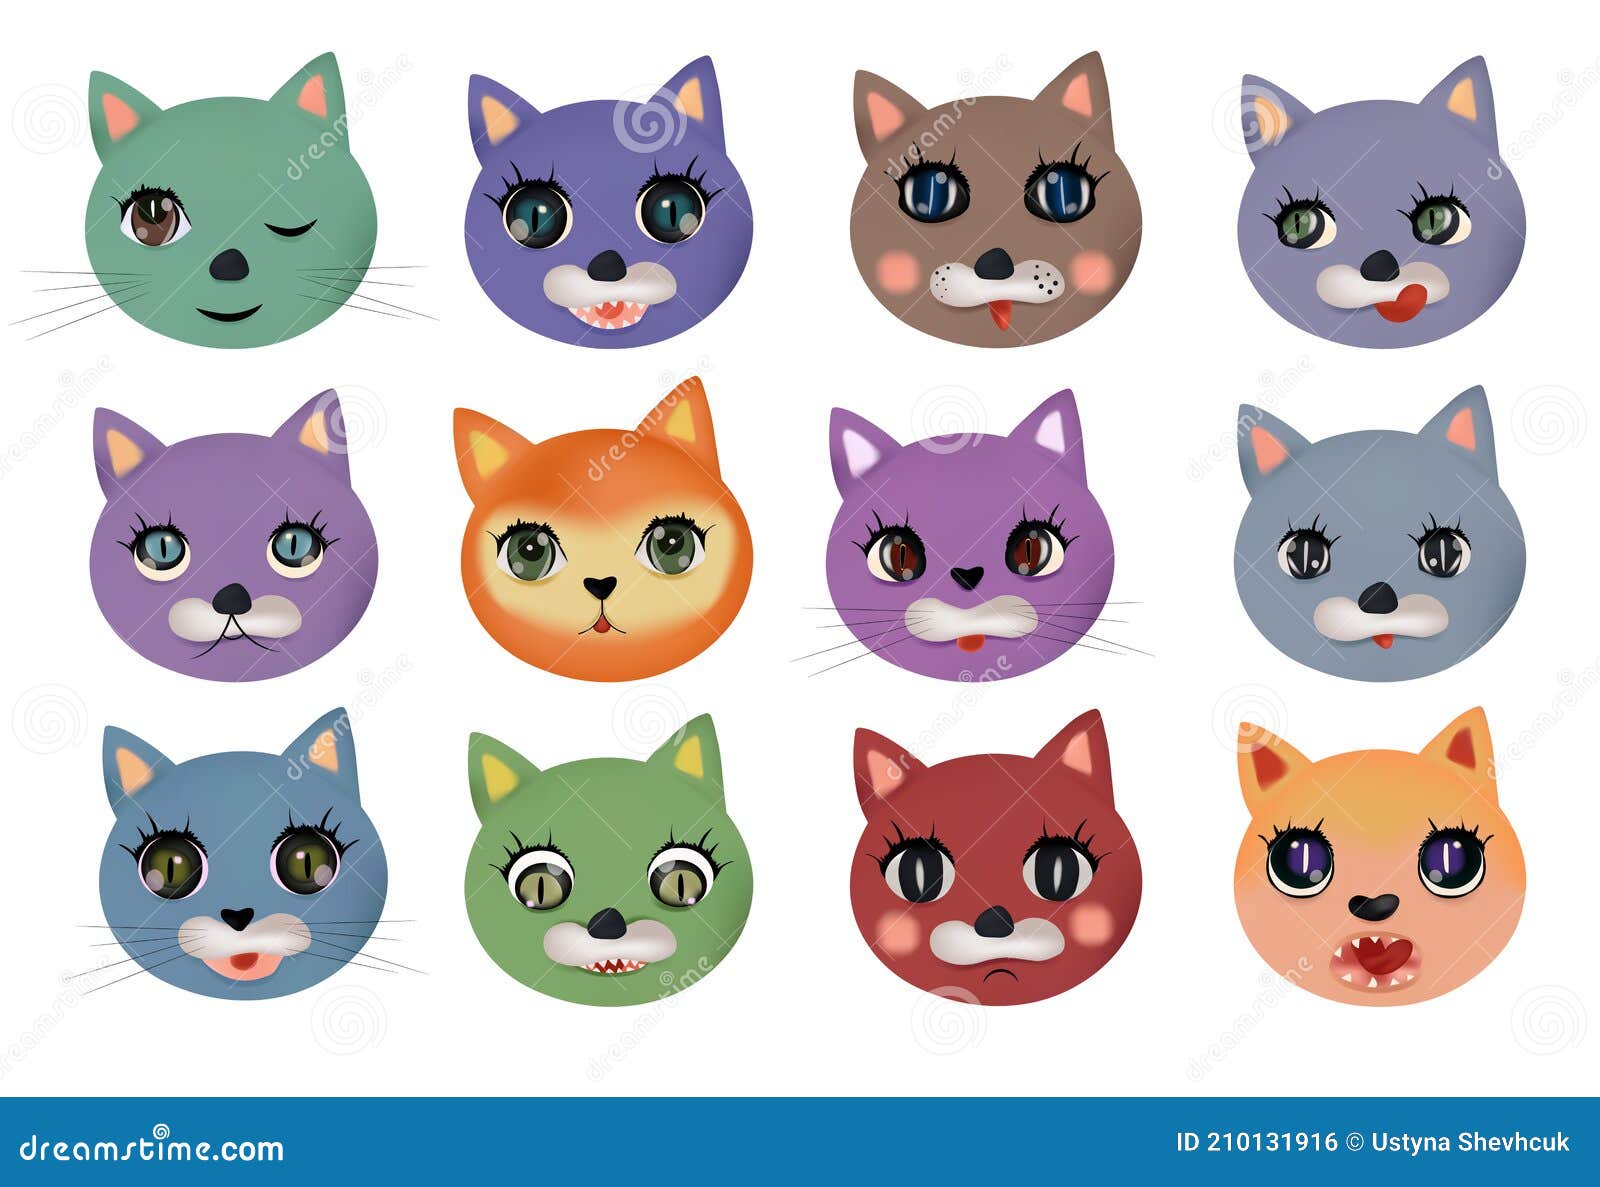 Cute Dibujos Animados Gatos Y Perros Con Diferentes Emociones